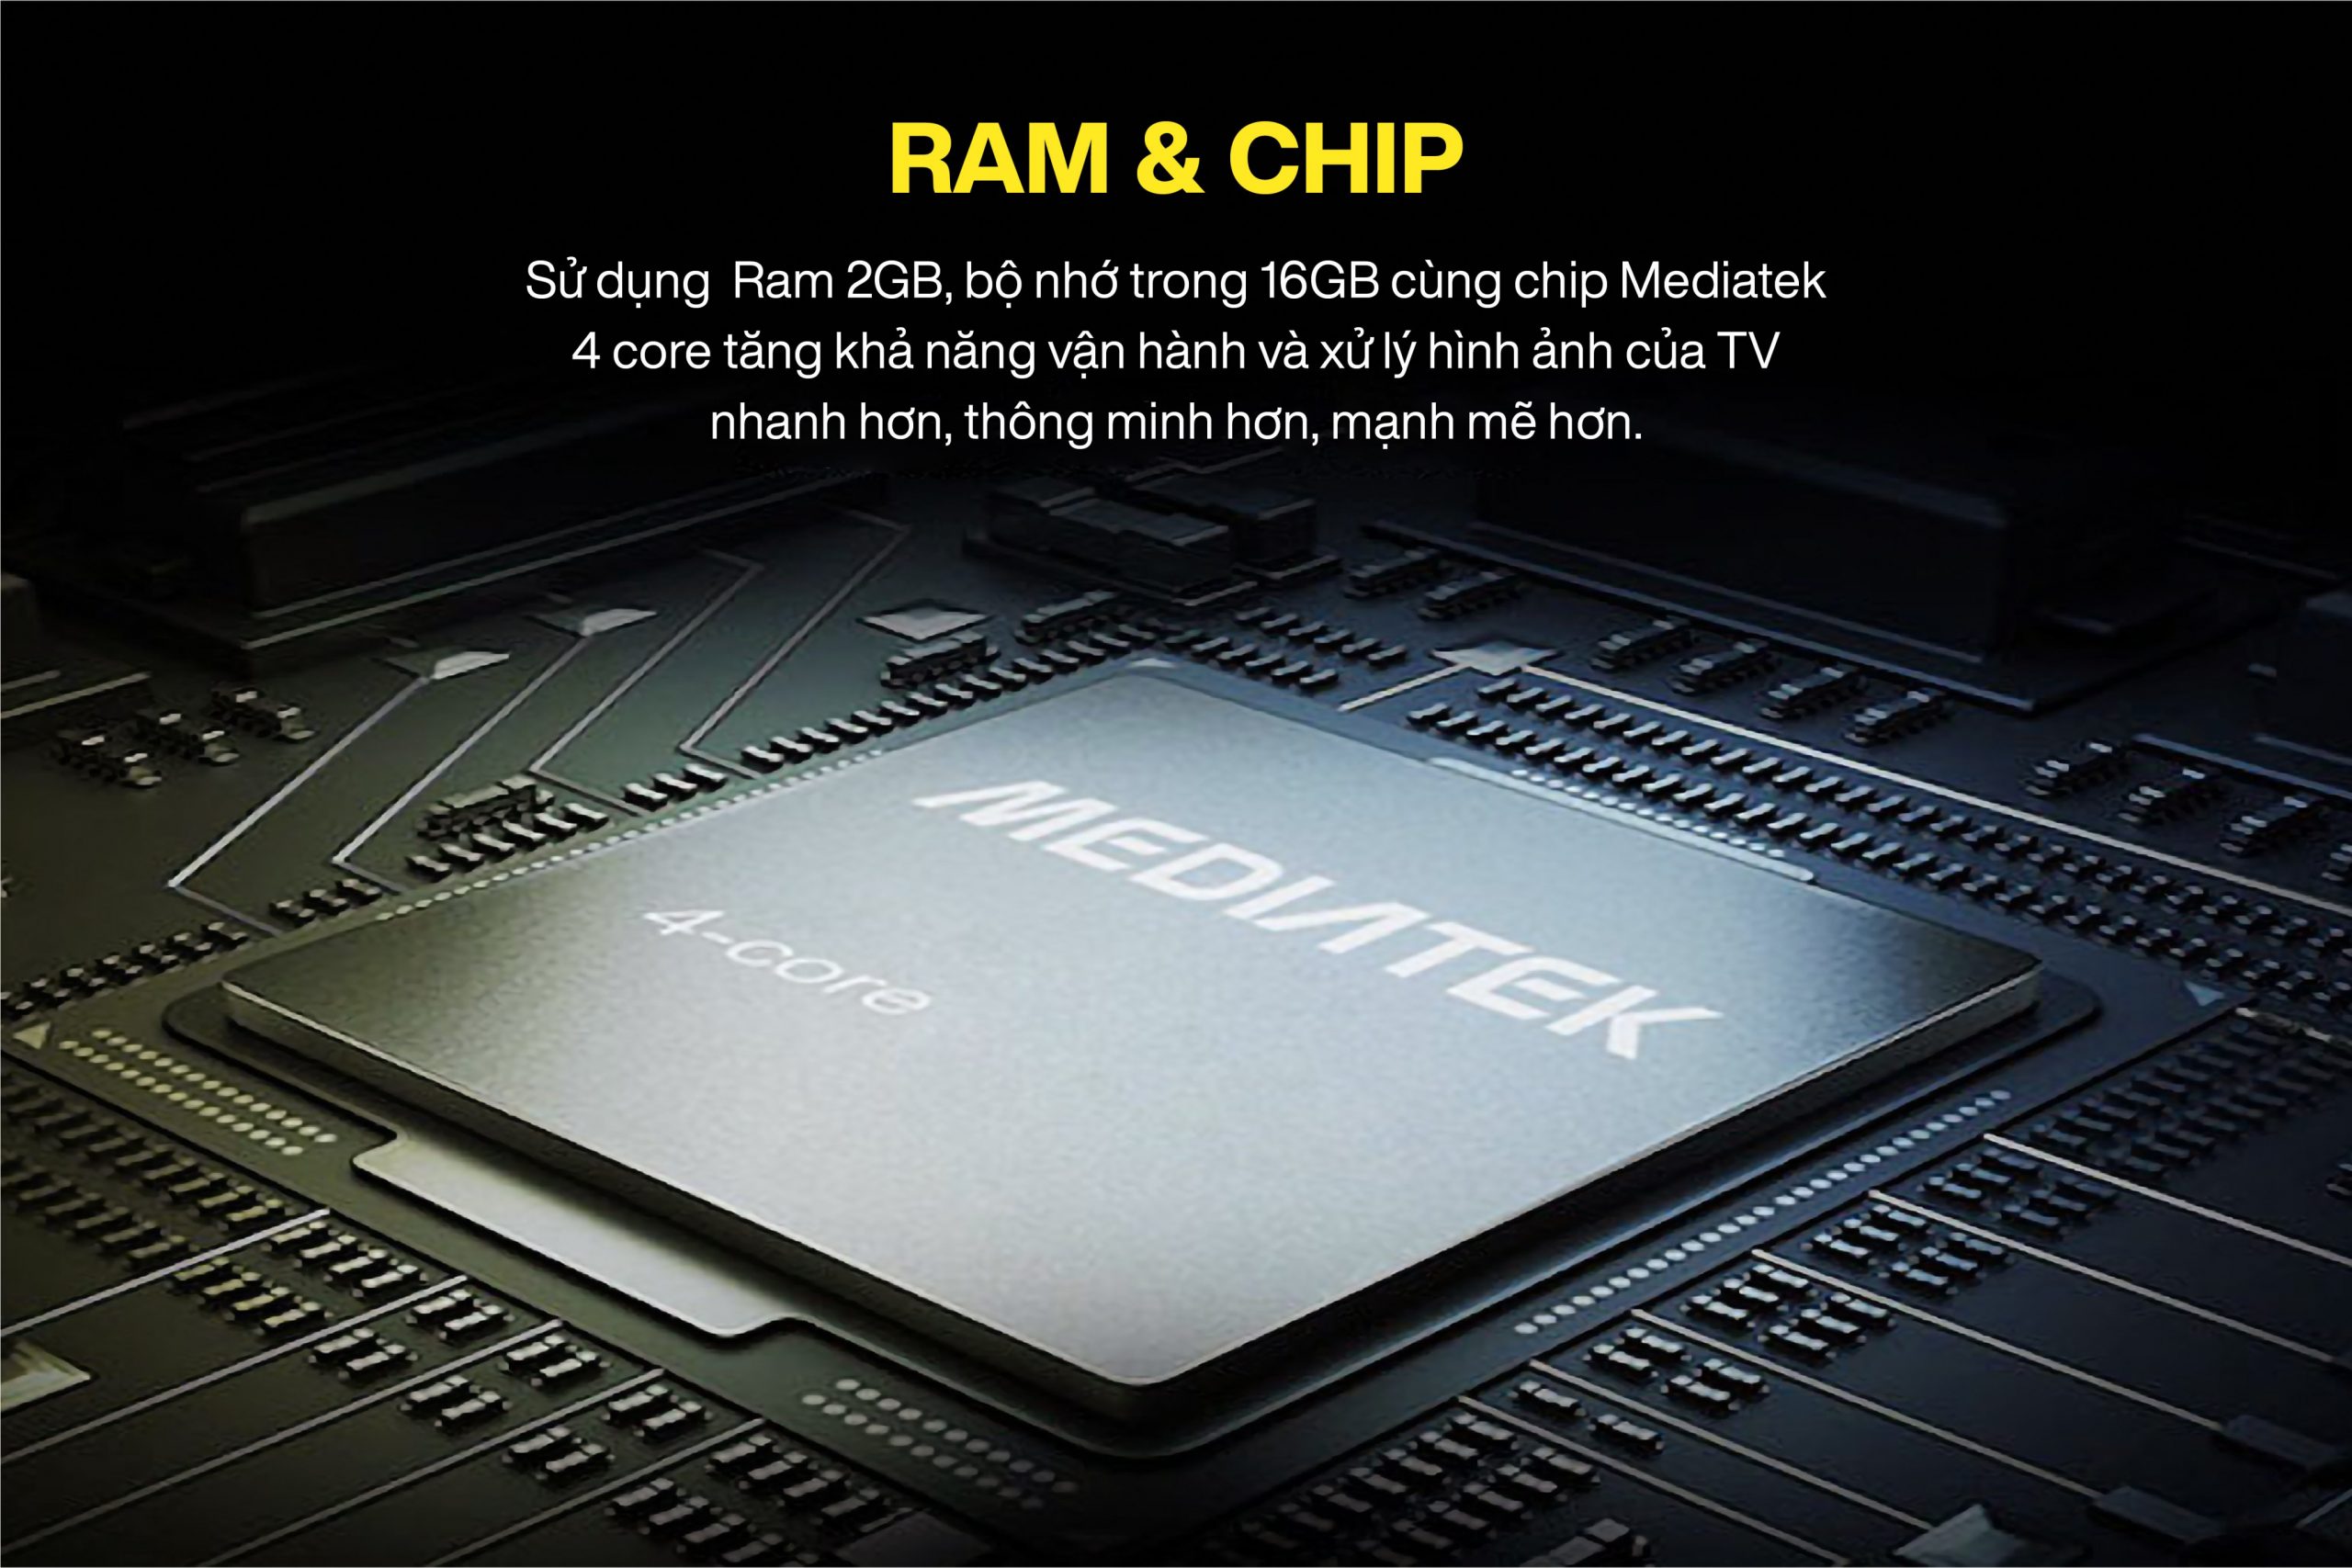 Ram & Chip